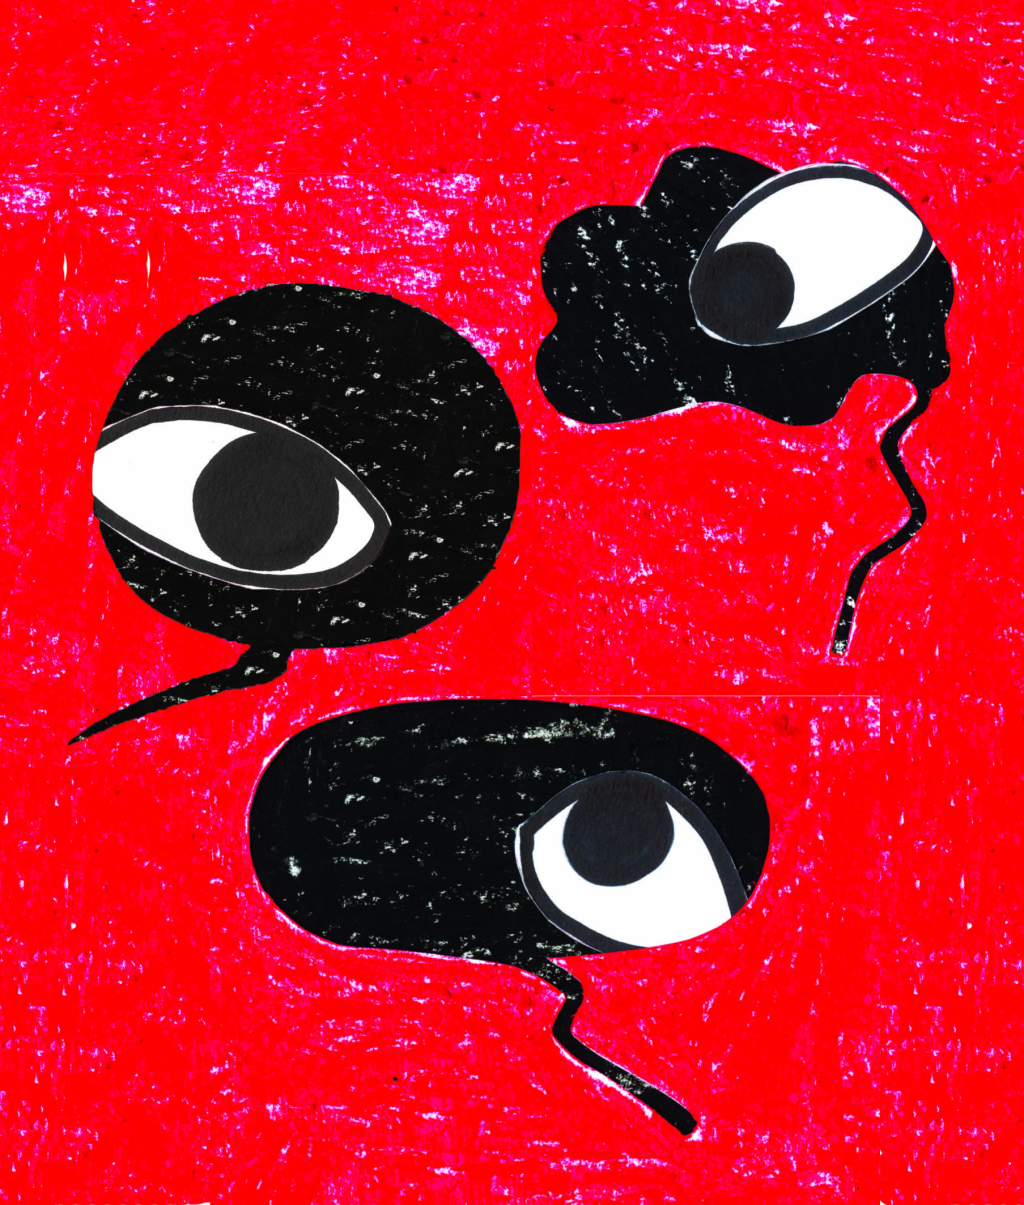 Un'illustrazione di Tania Perez che raffigura tre occhi in bolle vocali.